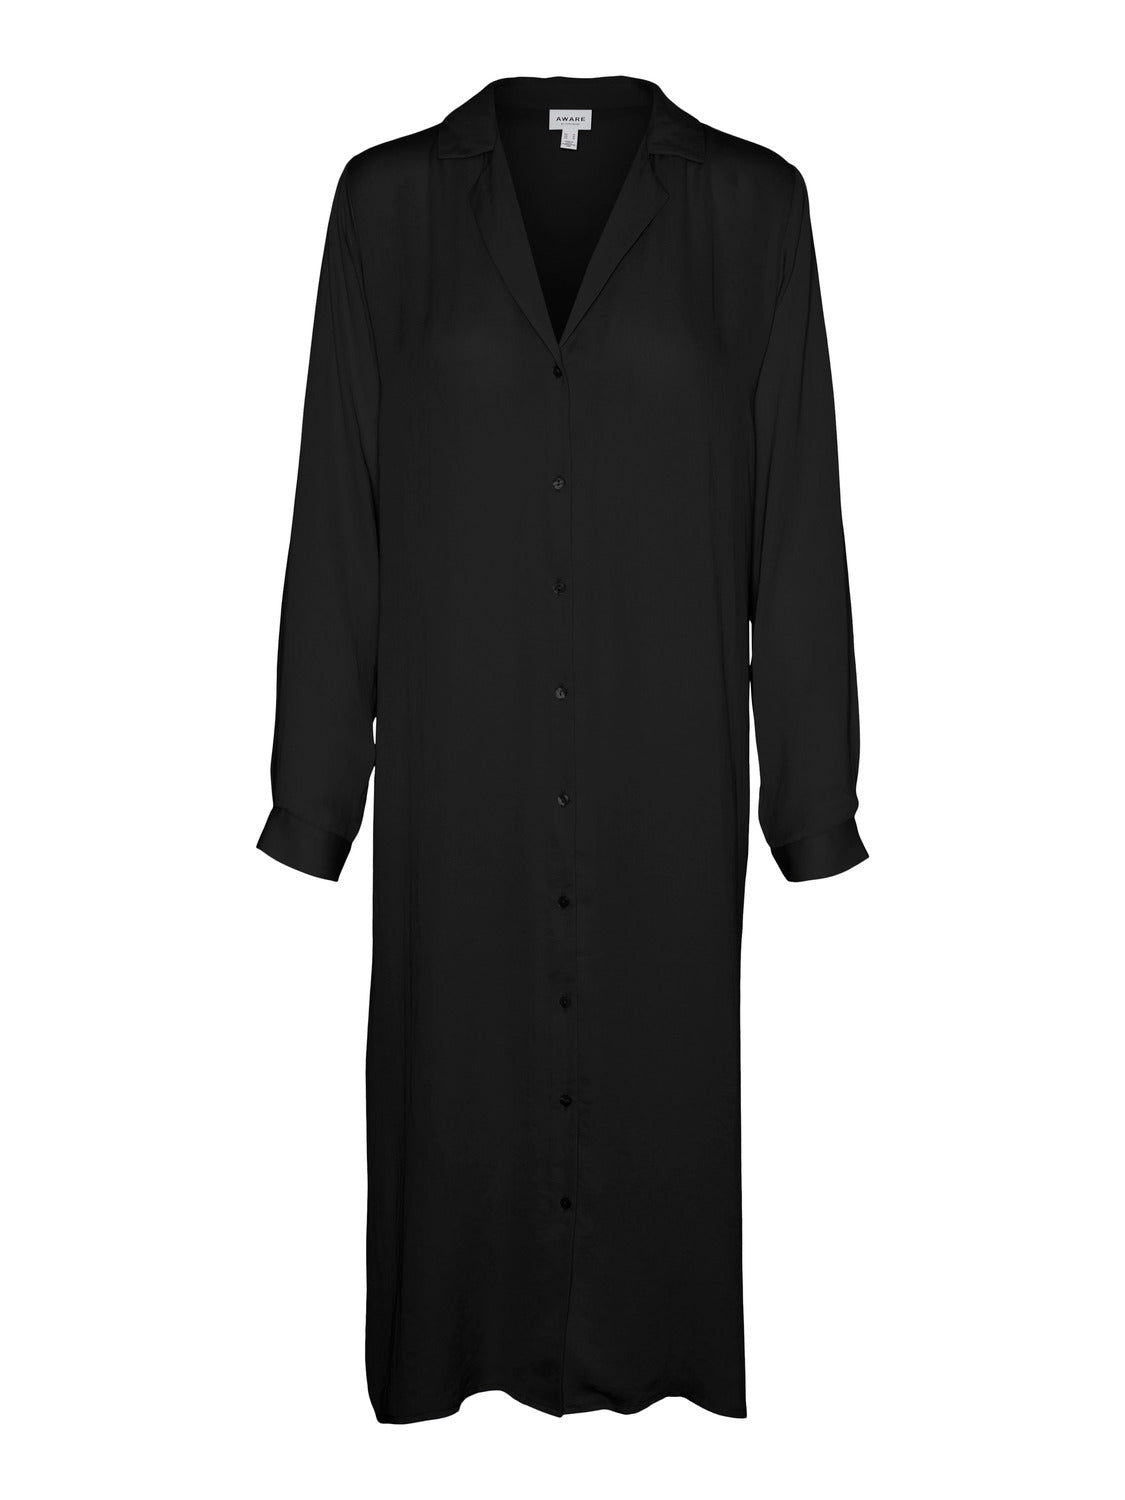 VMDARCY Dress - Black